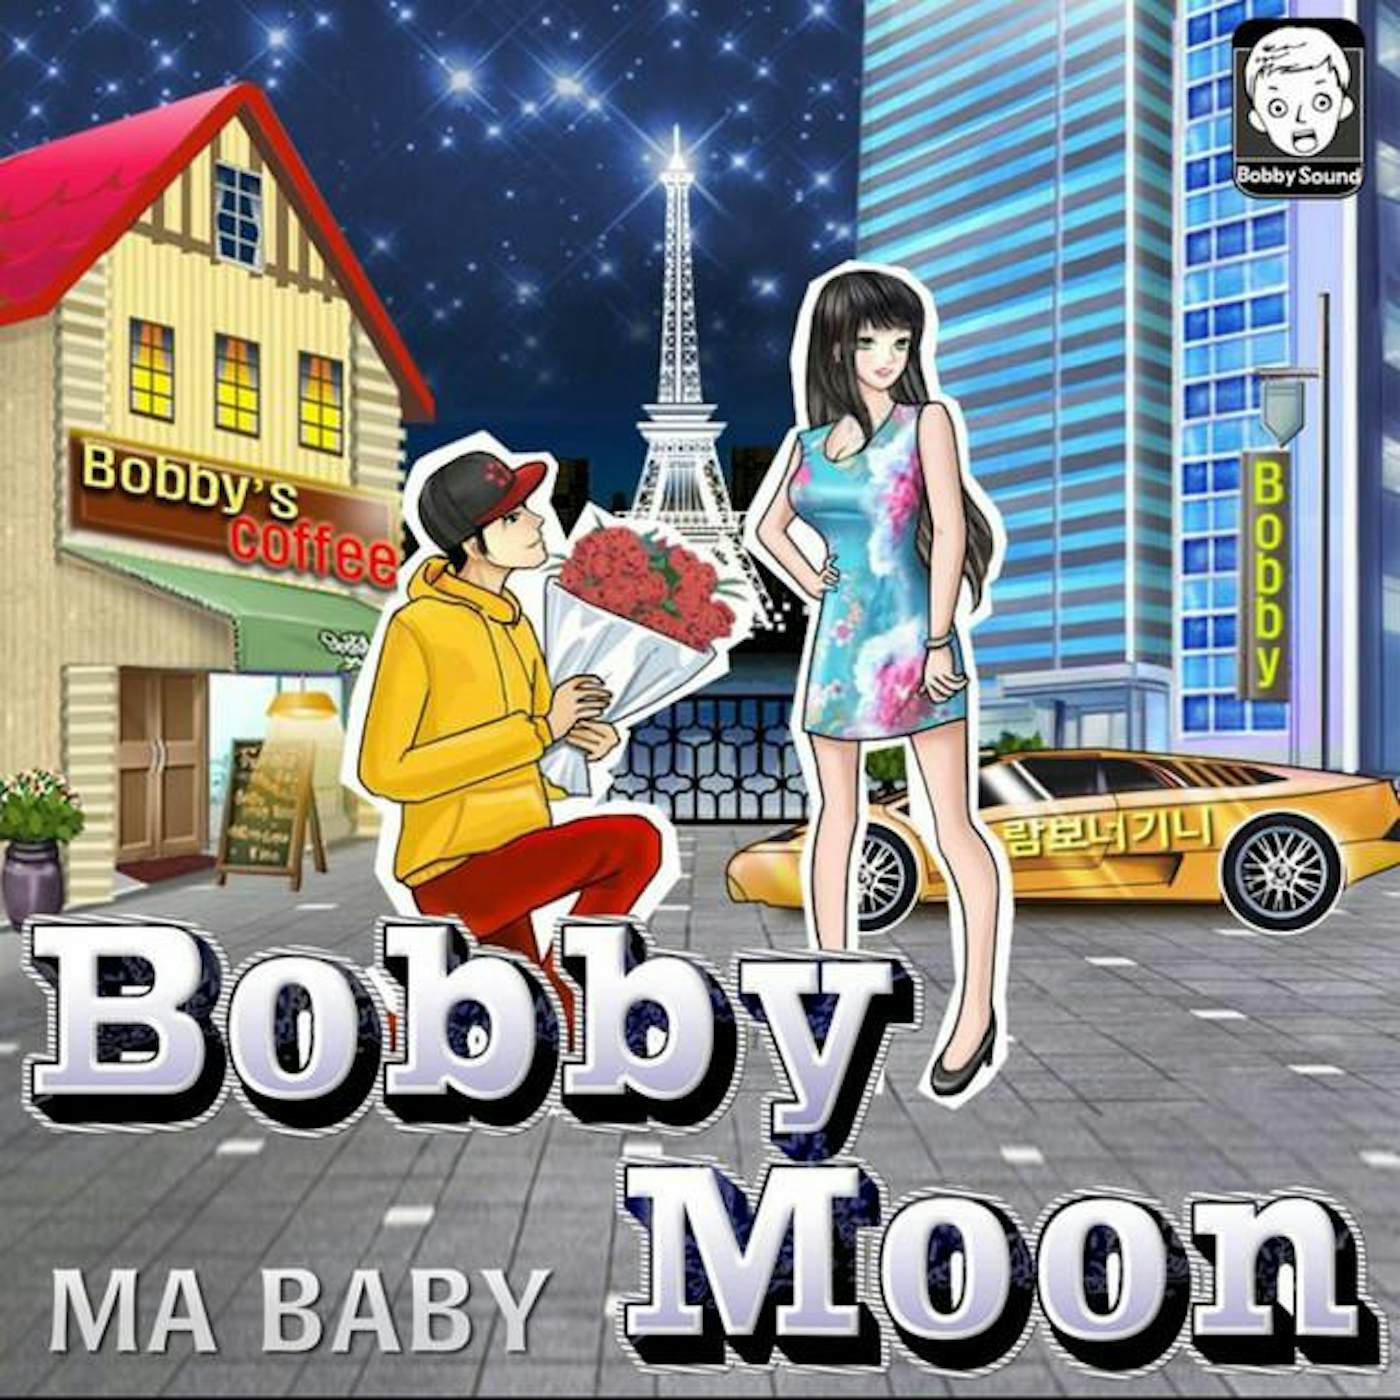 Bobby Moon